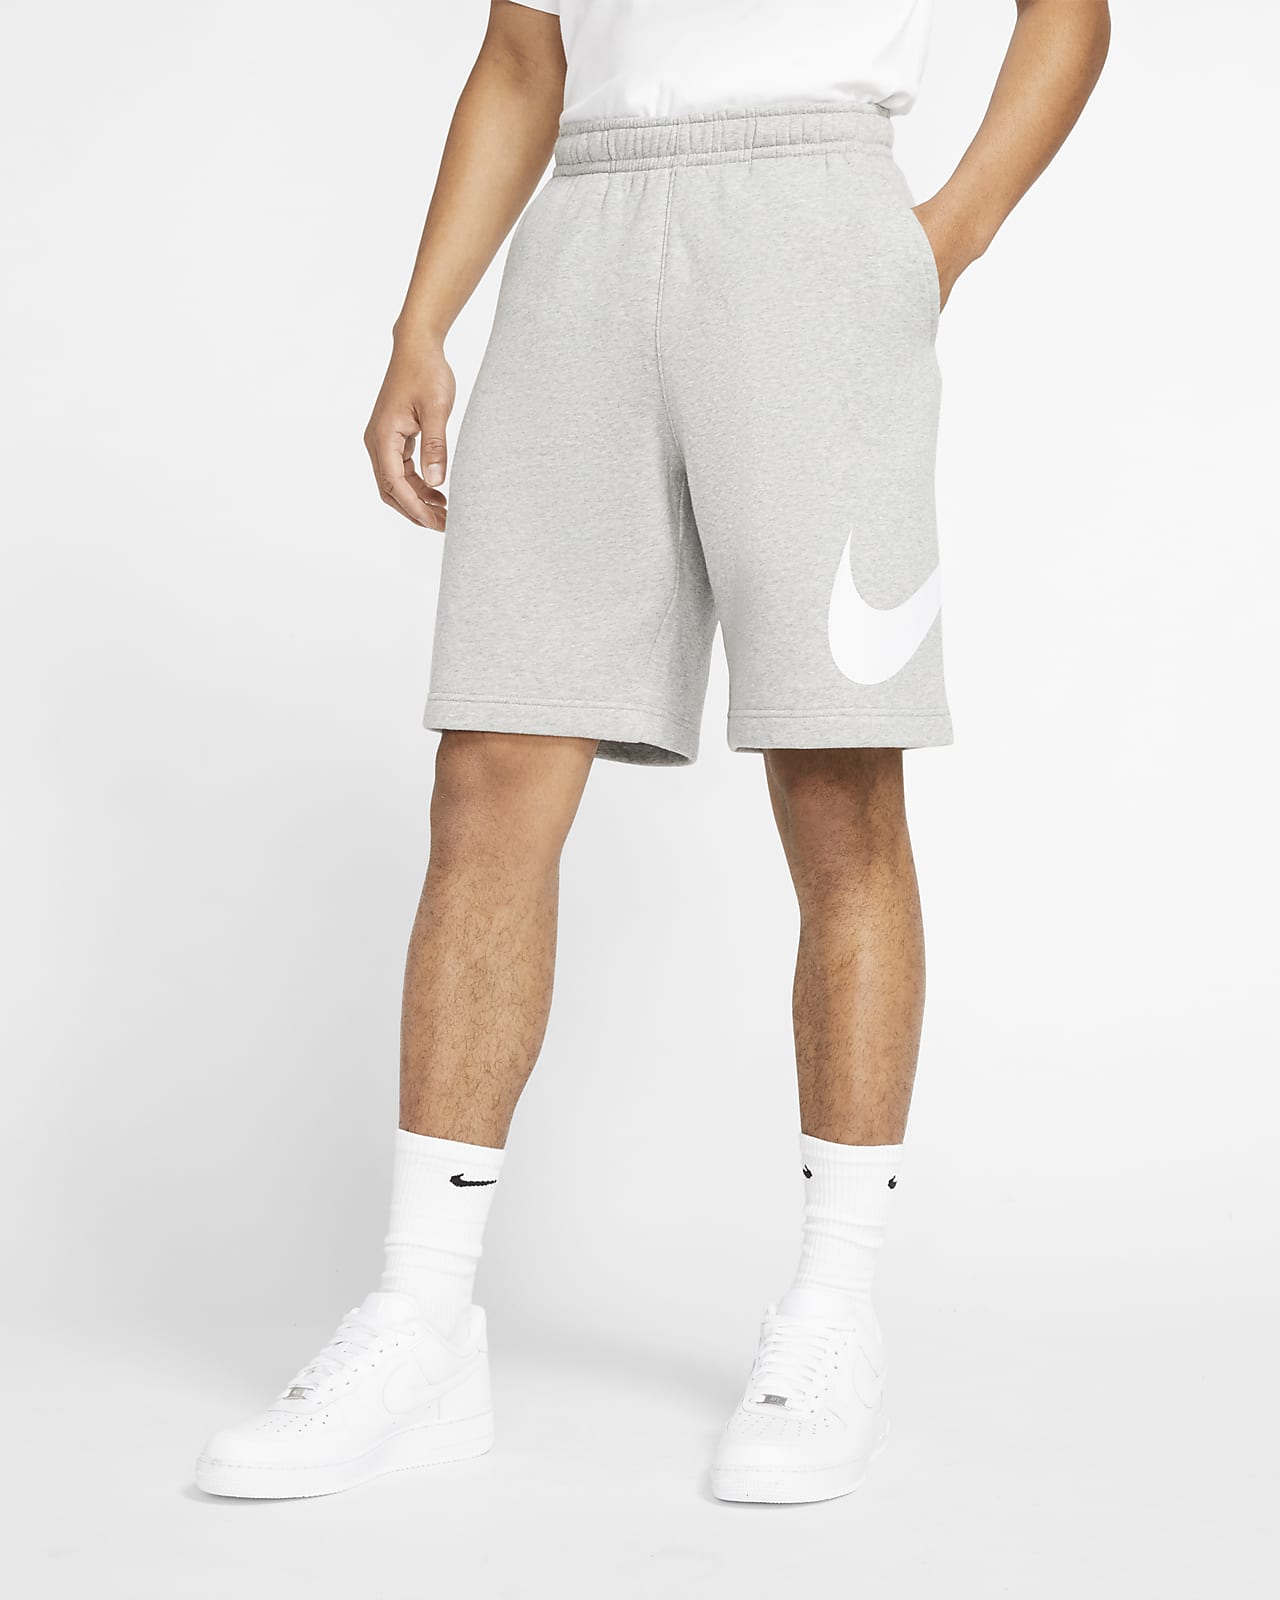  Grey Nike Shorts